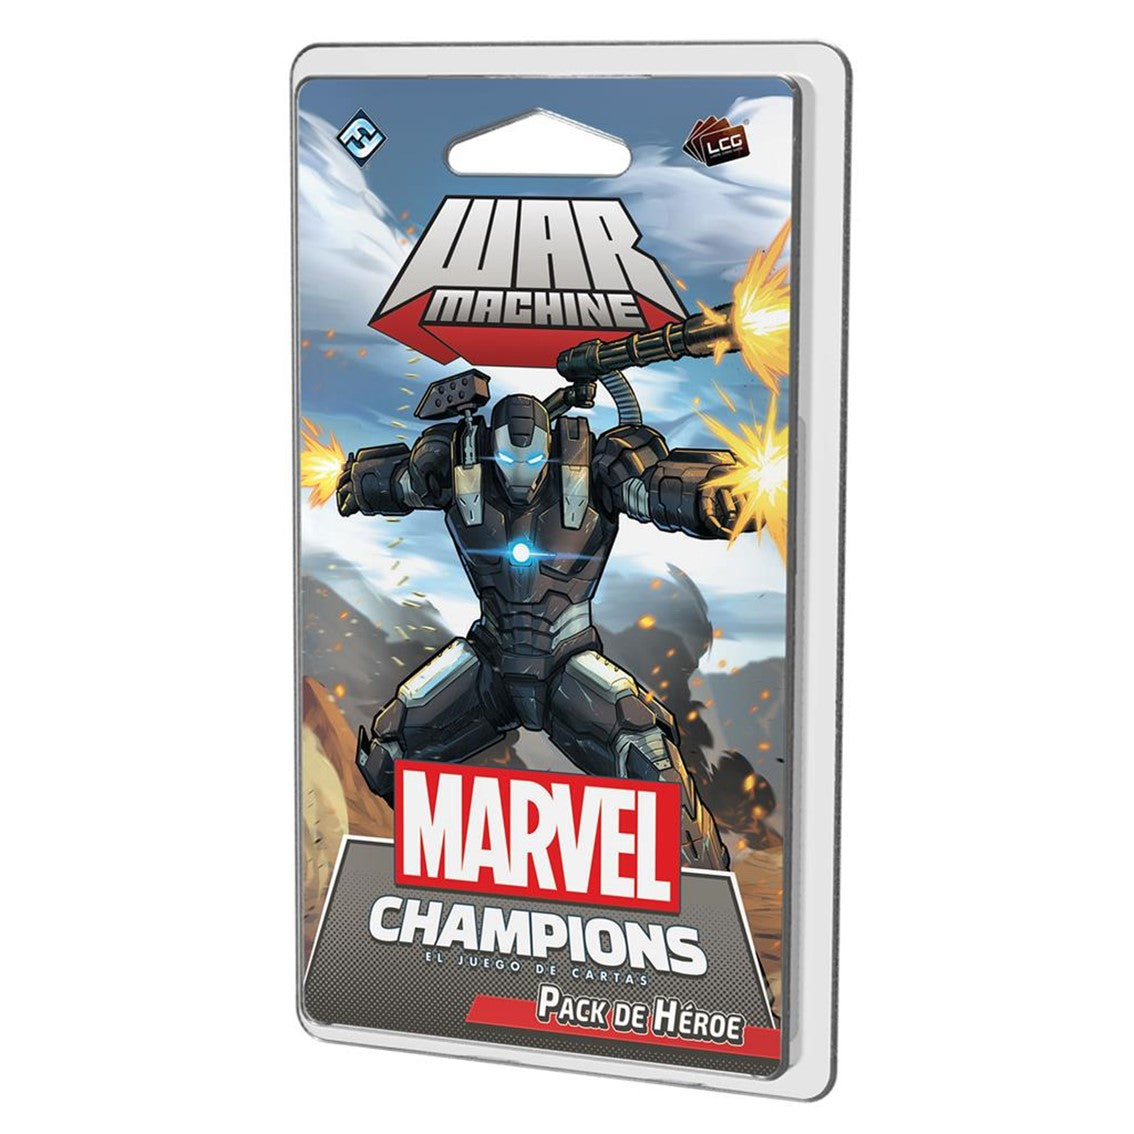 Juego de mesa Marvel Champions: War Machine (pack de héroe)